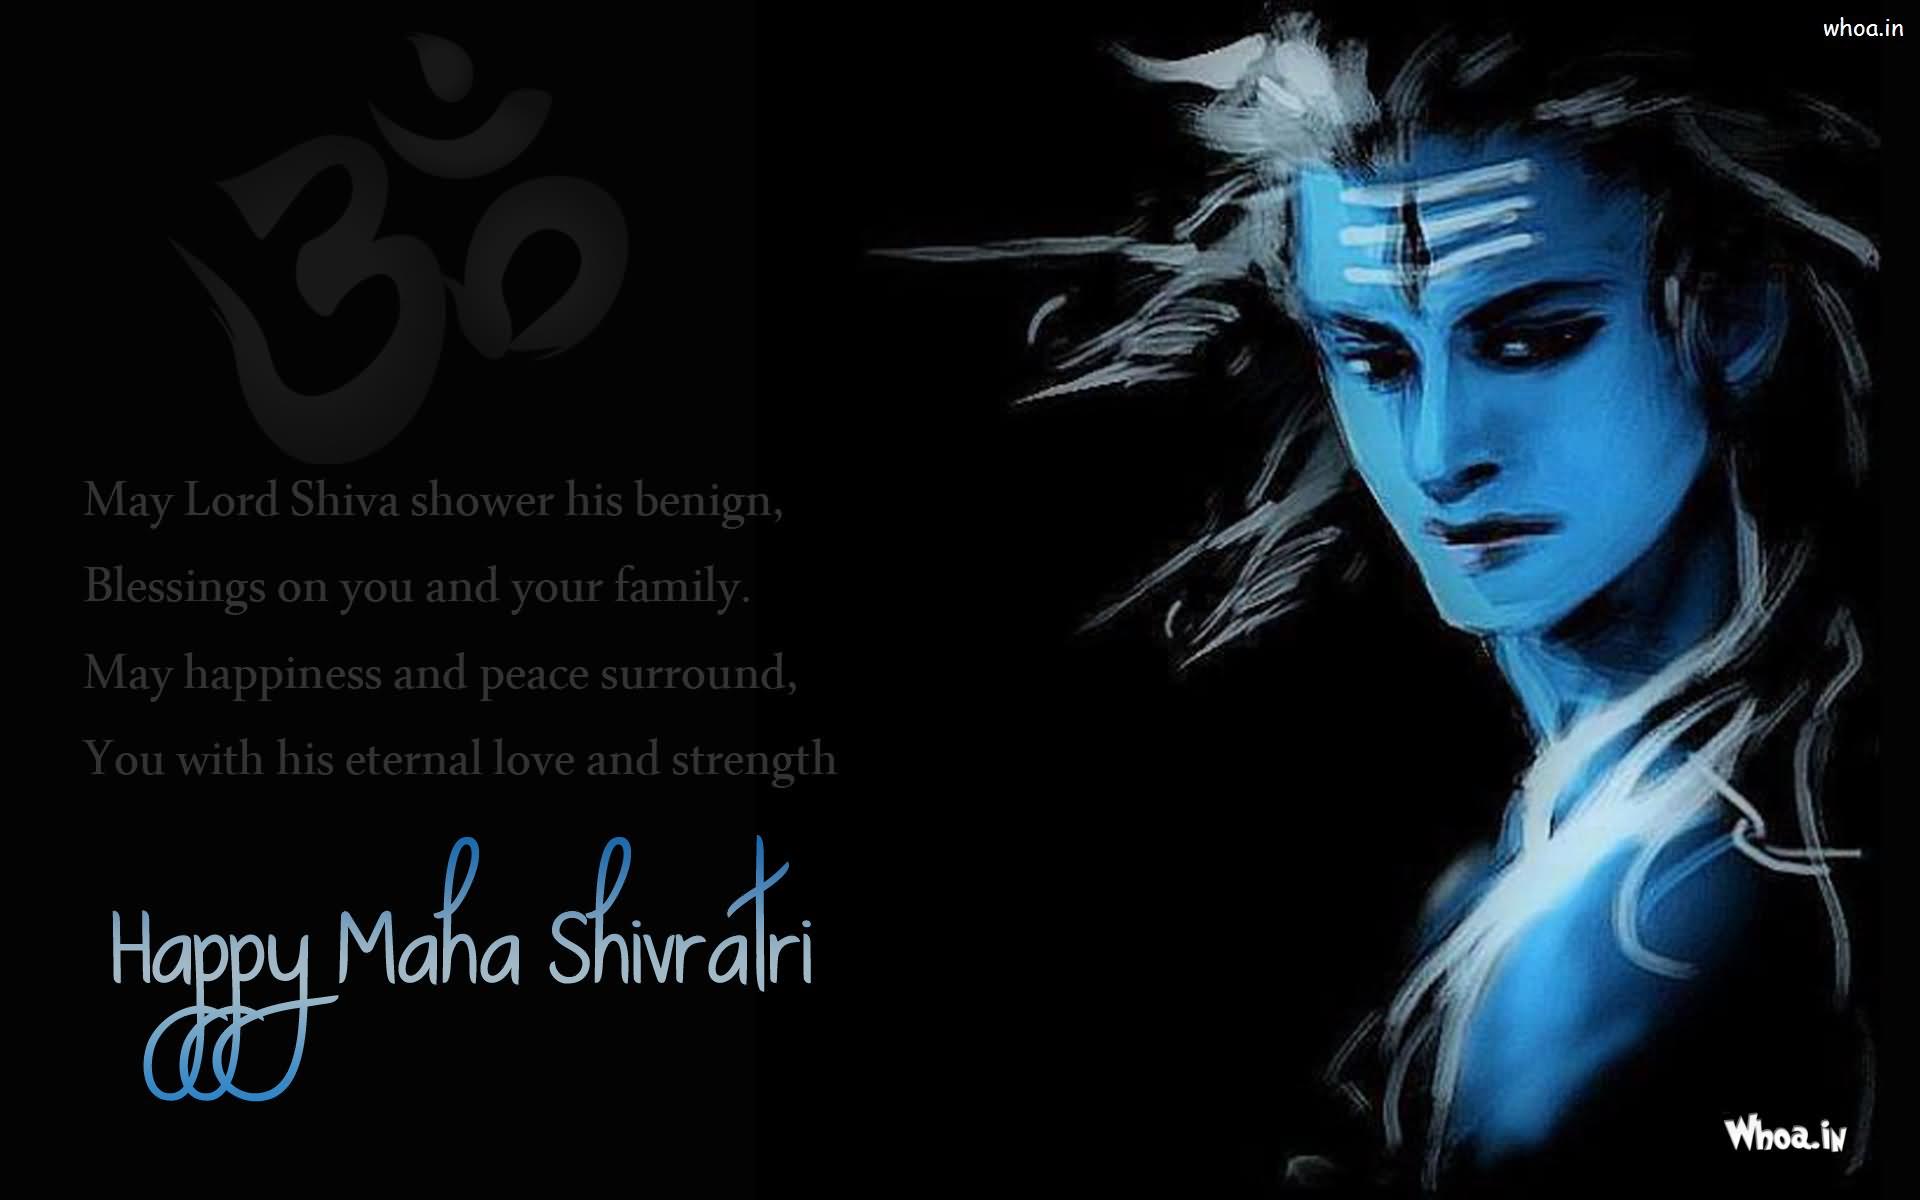 May-Lord-Shiva-Shower-His-Benign-Blessings-Happy-Maha-Shivratri